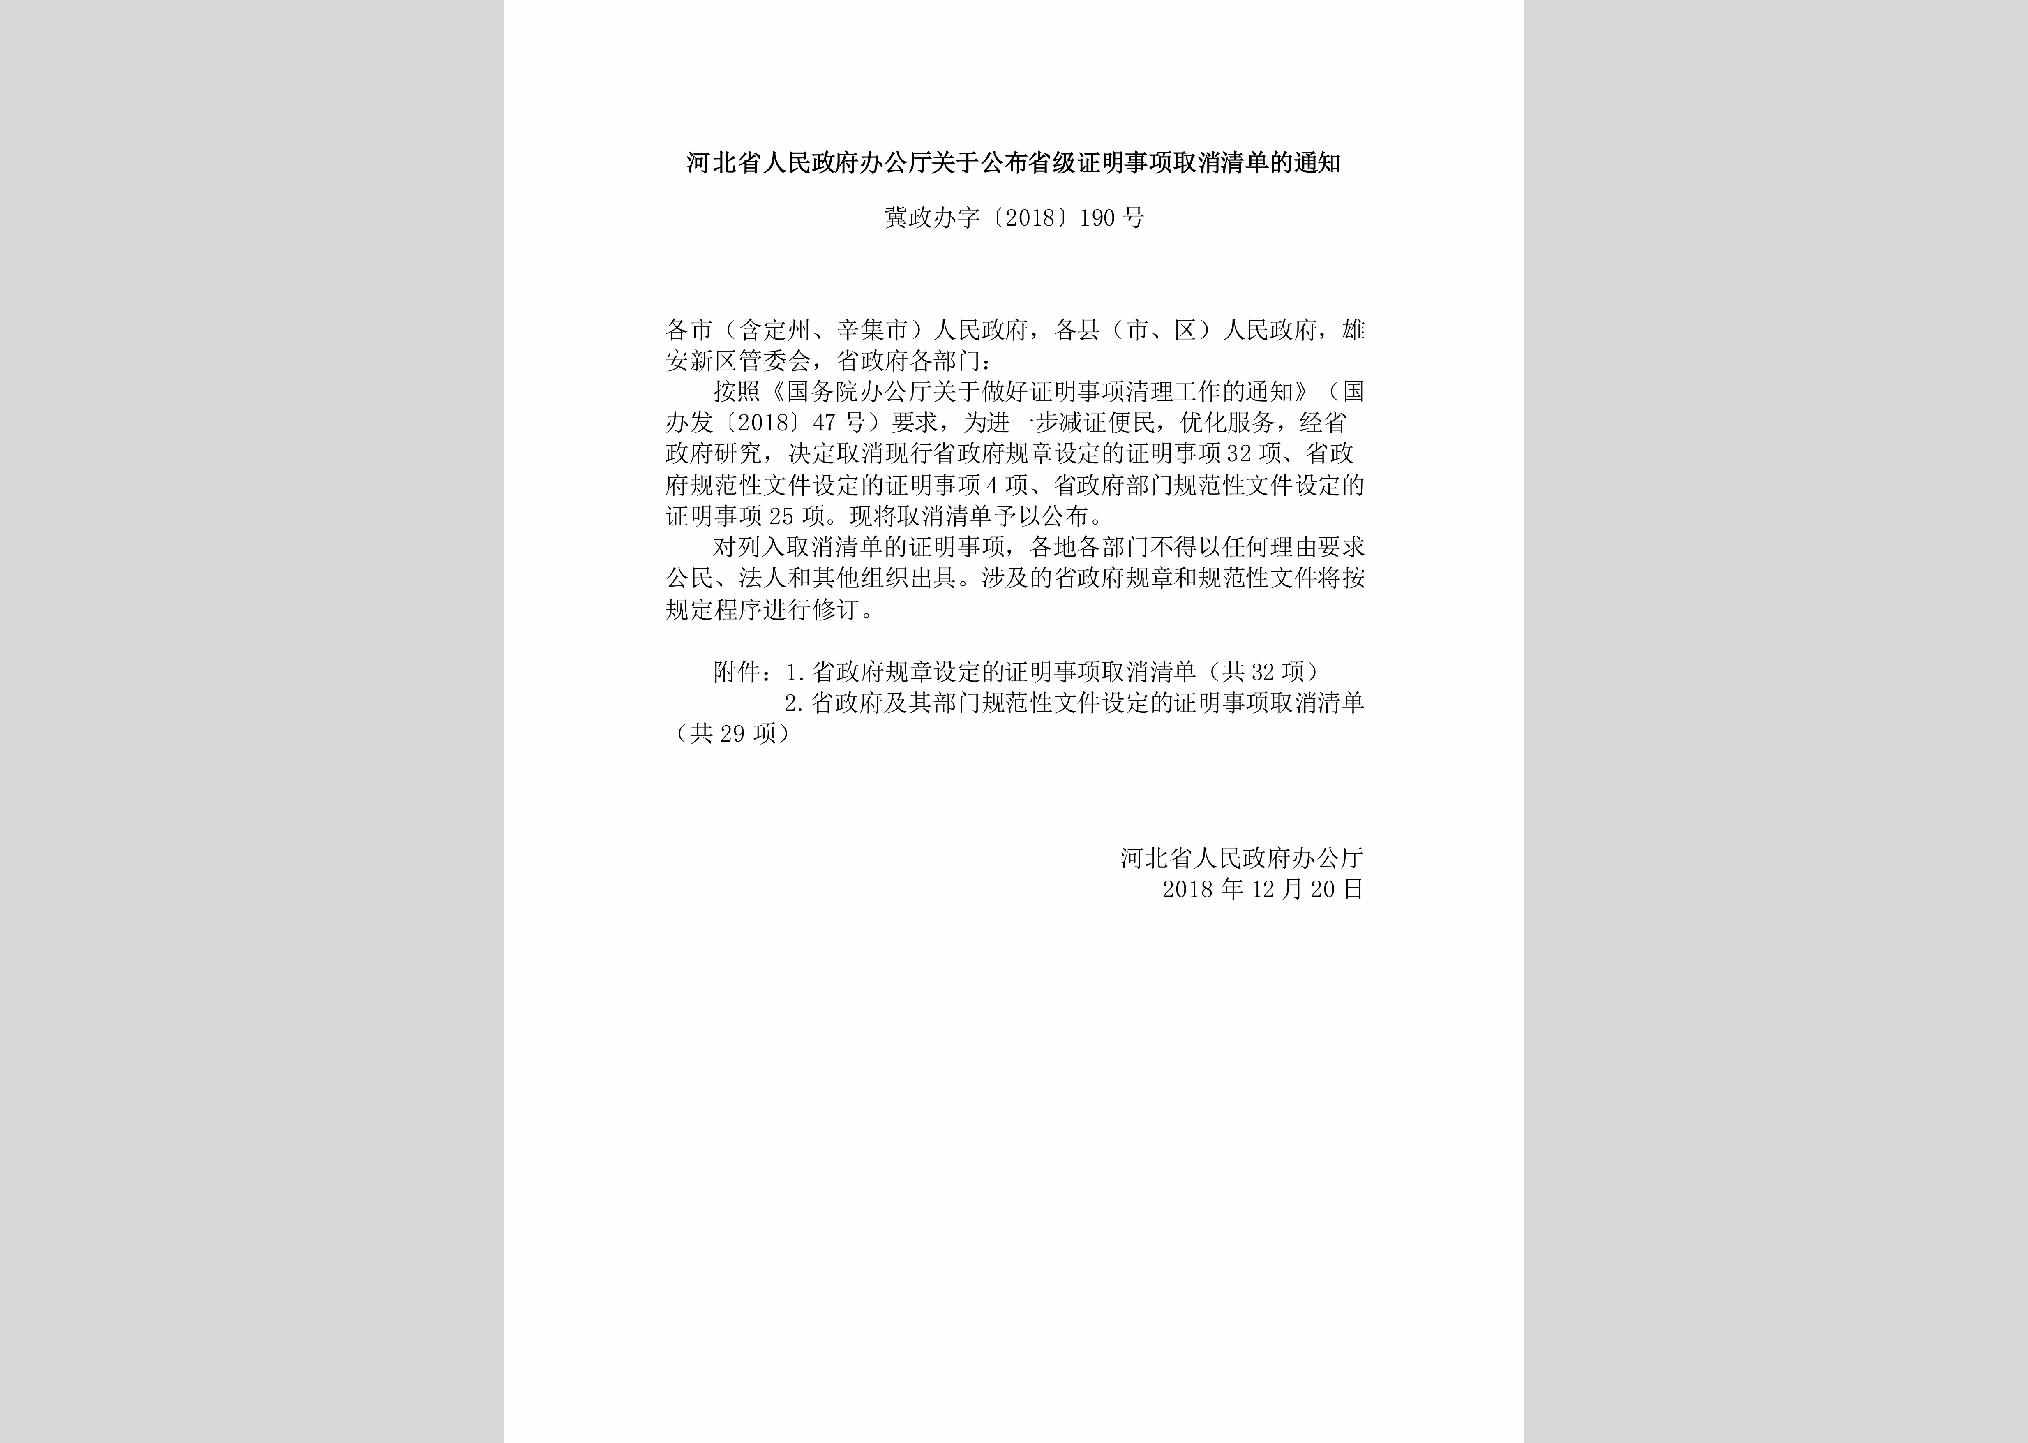 冀政办字[2018]190号：河北省人民政府办公厅关于公布省级证明事项取消清单的通知